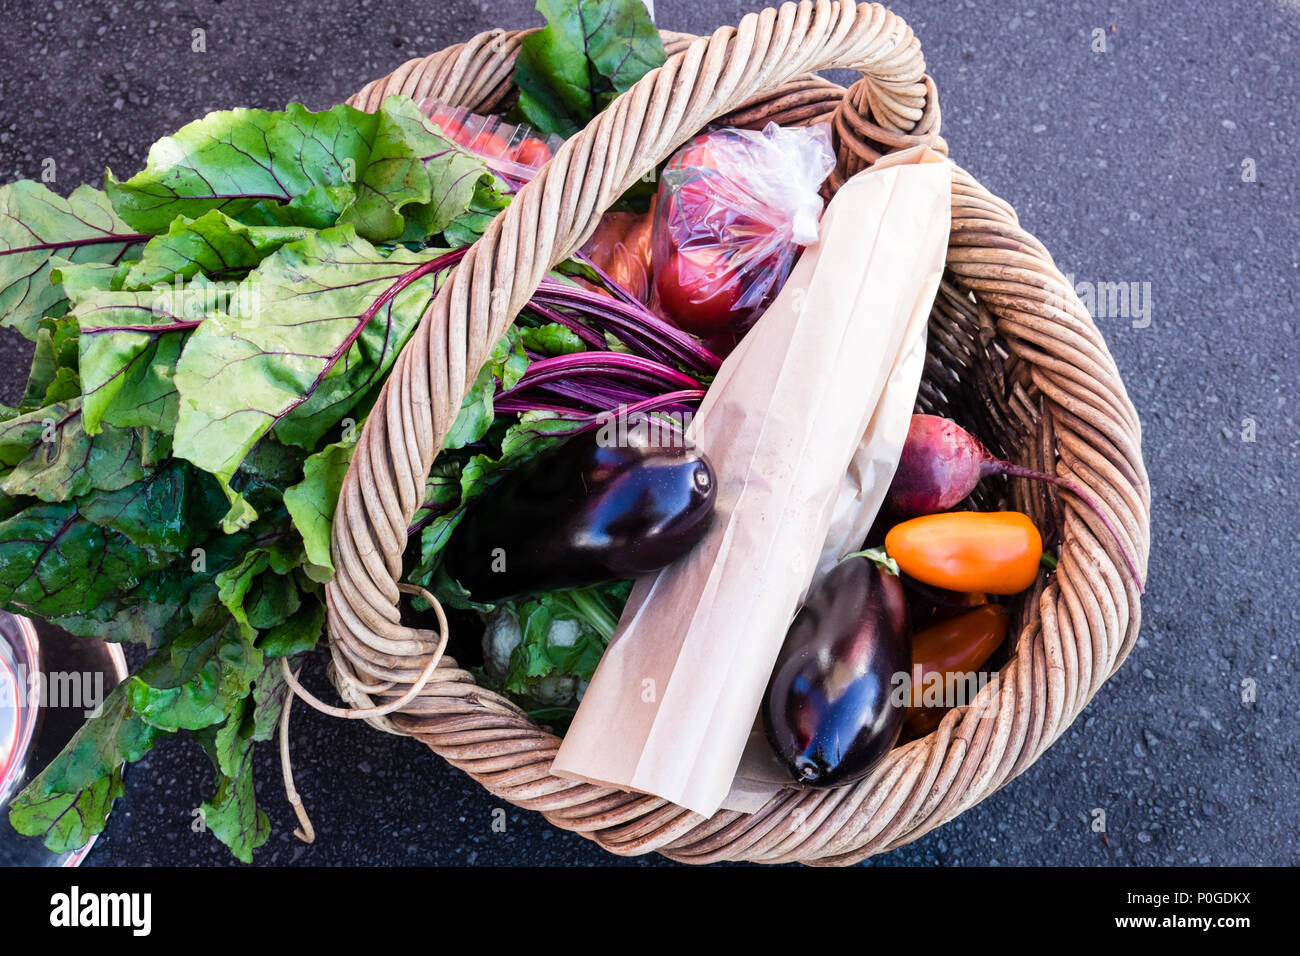 Vimini carrello di verdure fresche e prodotti ad un mercato degli agricoltori in Nuova Zelanda, nz Foto Stock